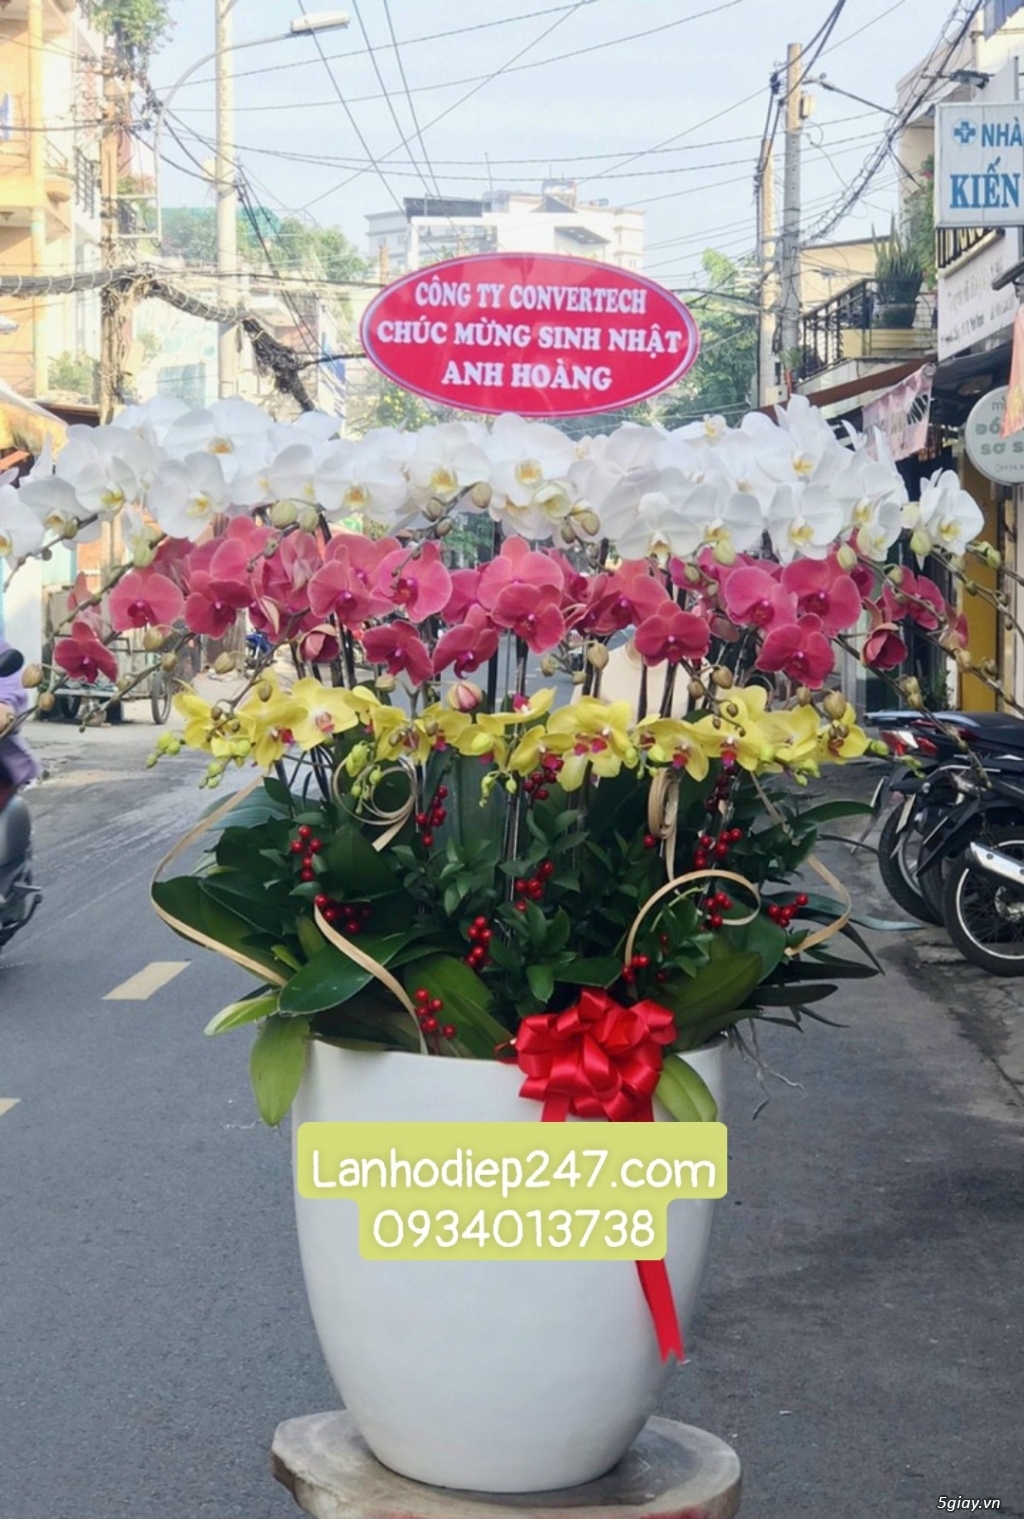 Mua Lan Hồ Điệp tại Sài Gòn, đặt hoa onine giao hàng miễn phí tại nơi - 15